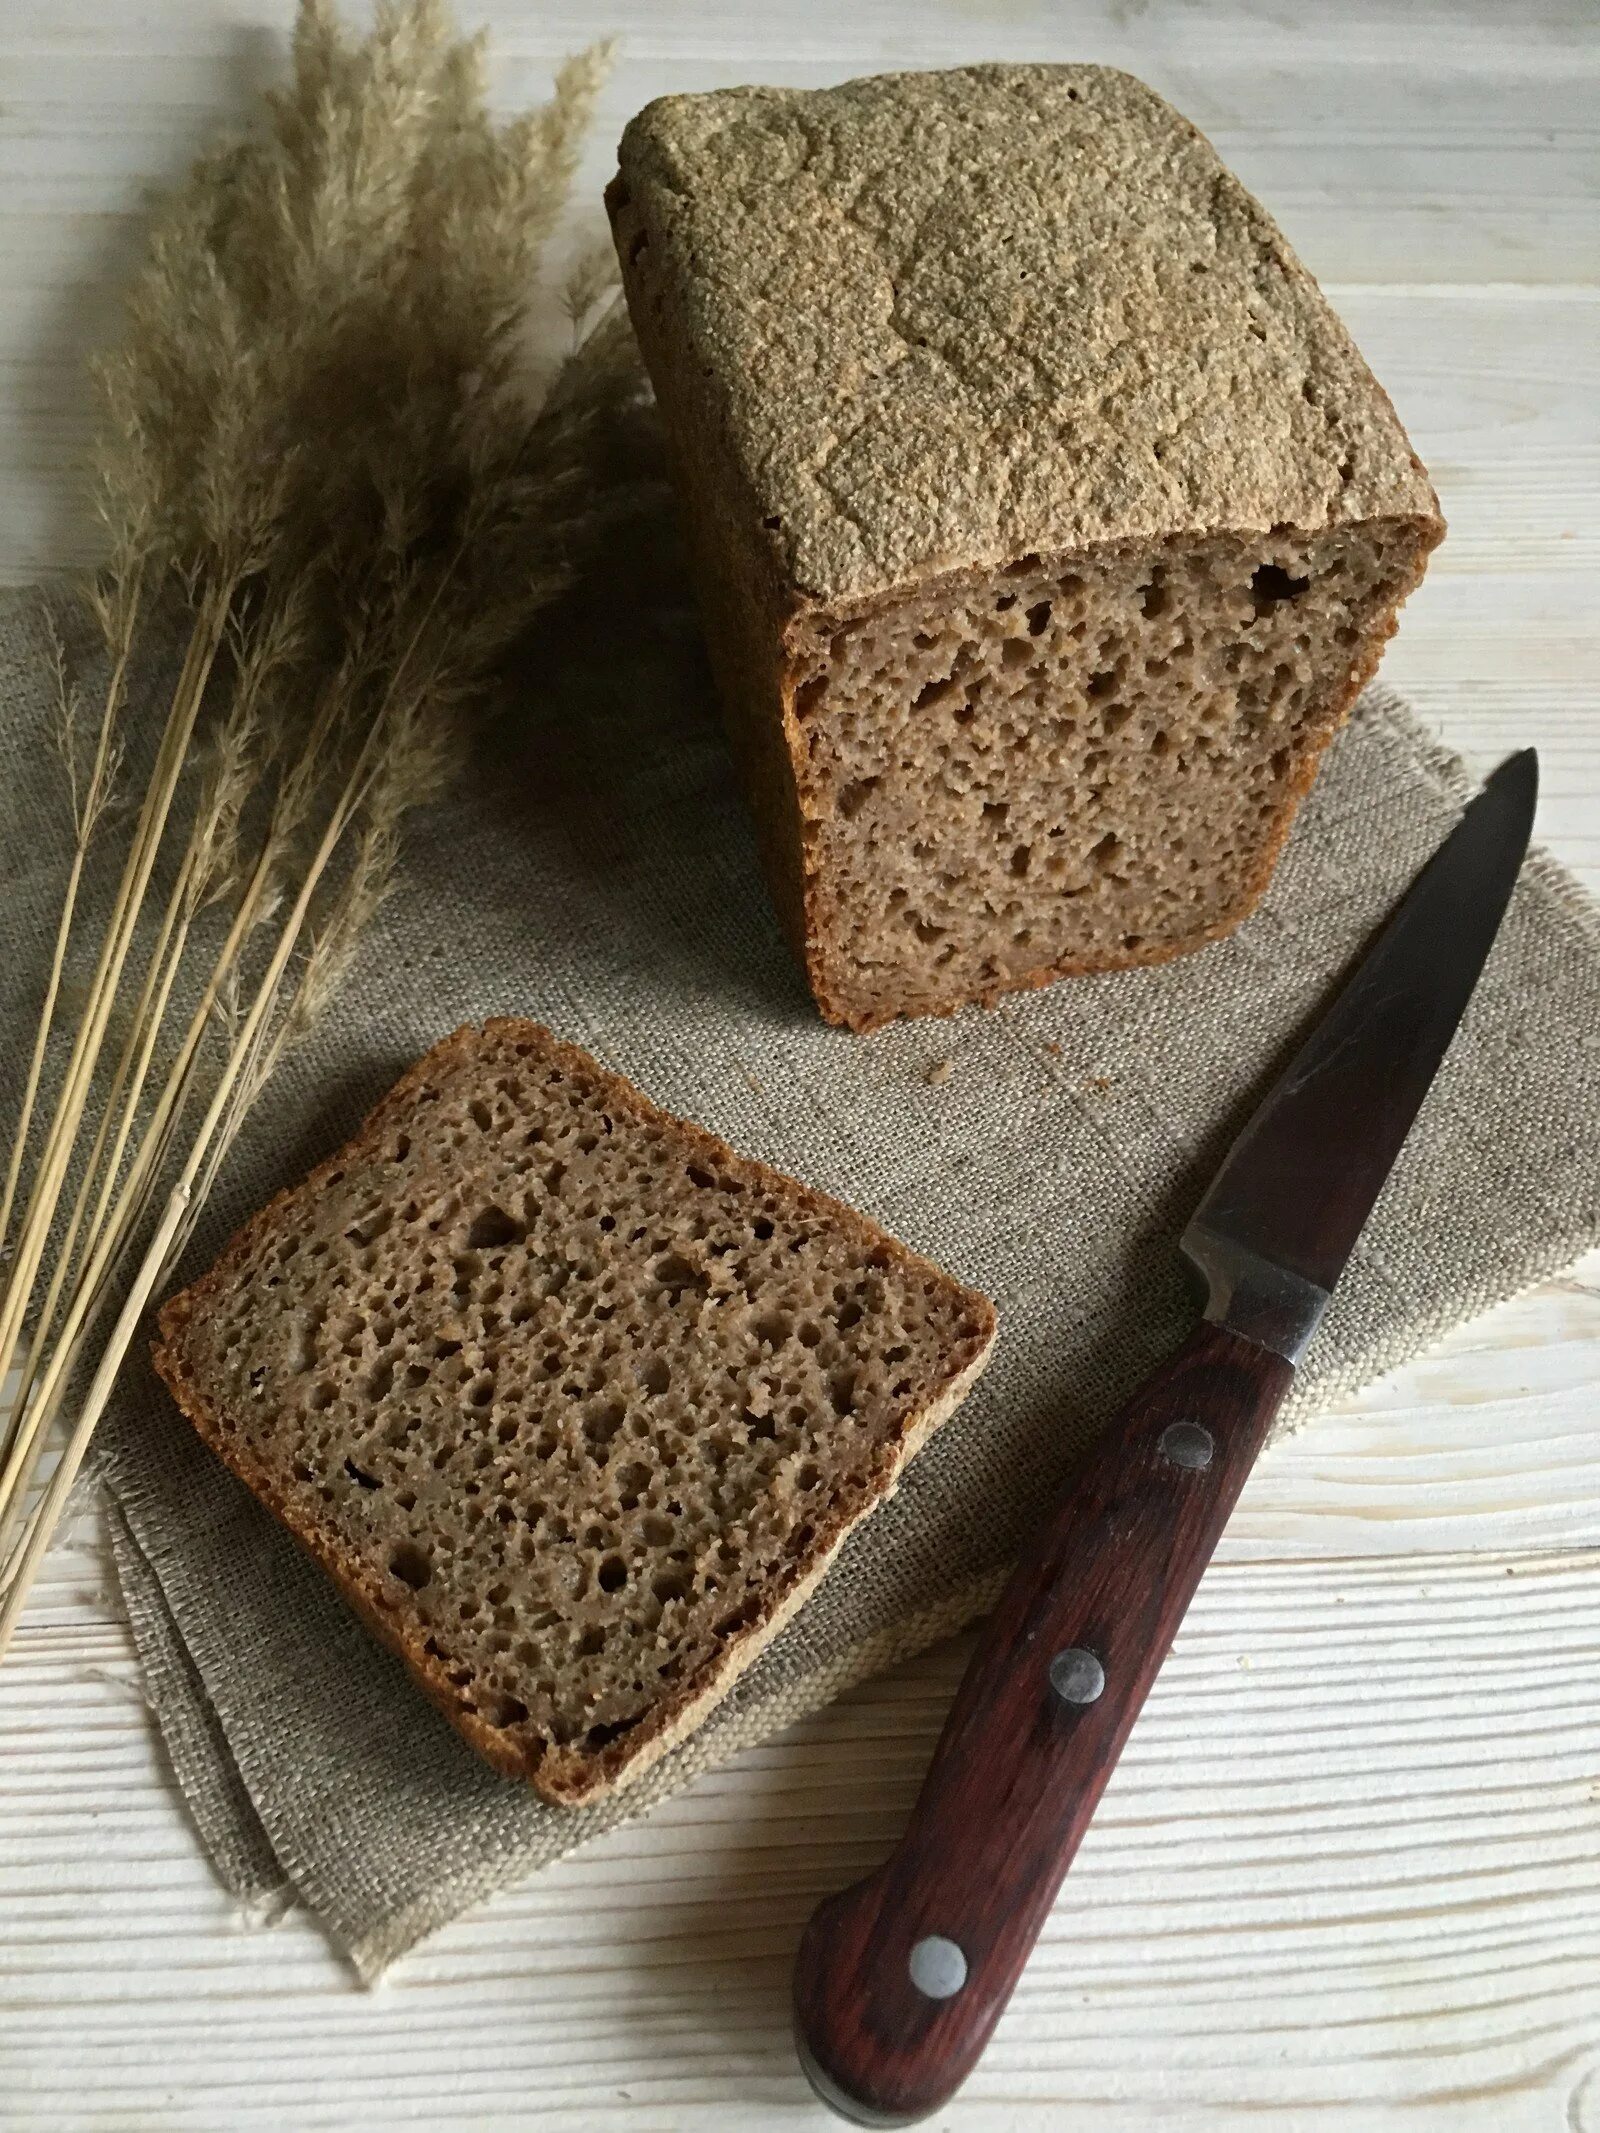 Ржаной цельнозерновой хлеб. Черный ржаной хлеб. Жена хлеба. Ржаной хлеб домашний.